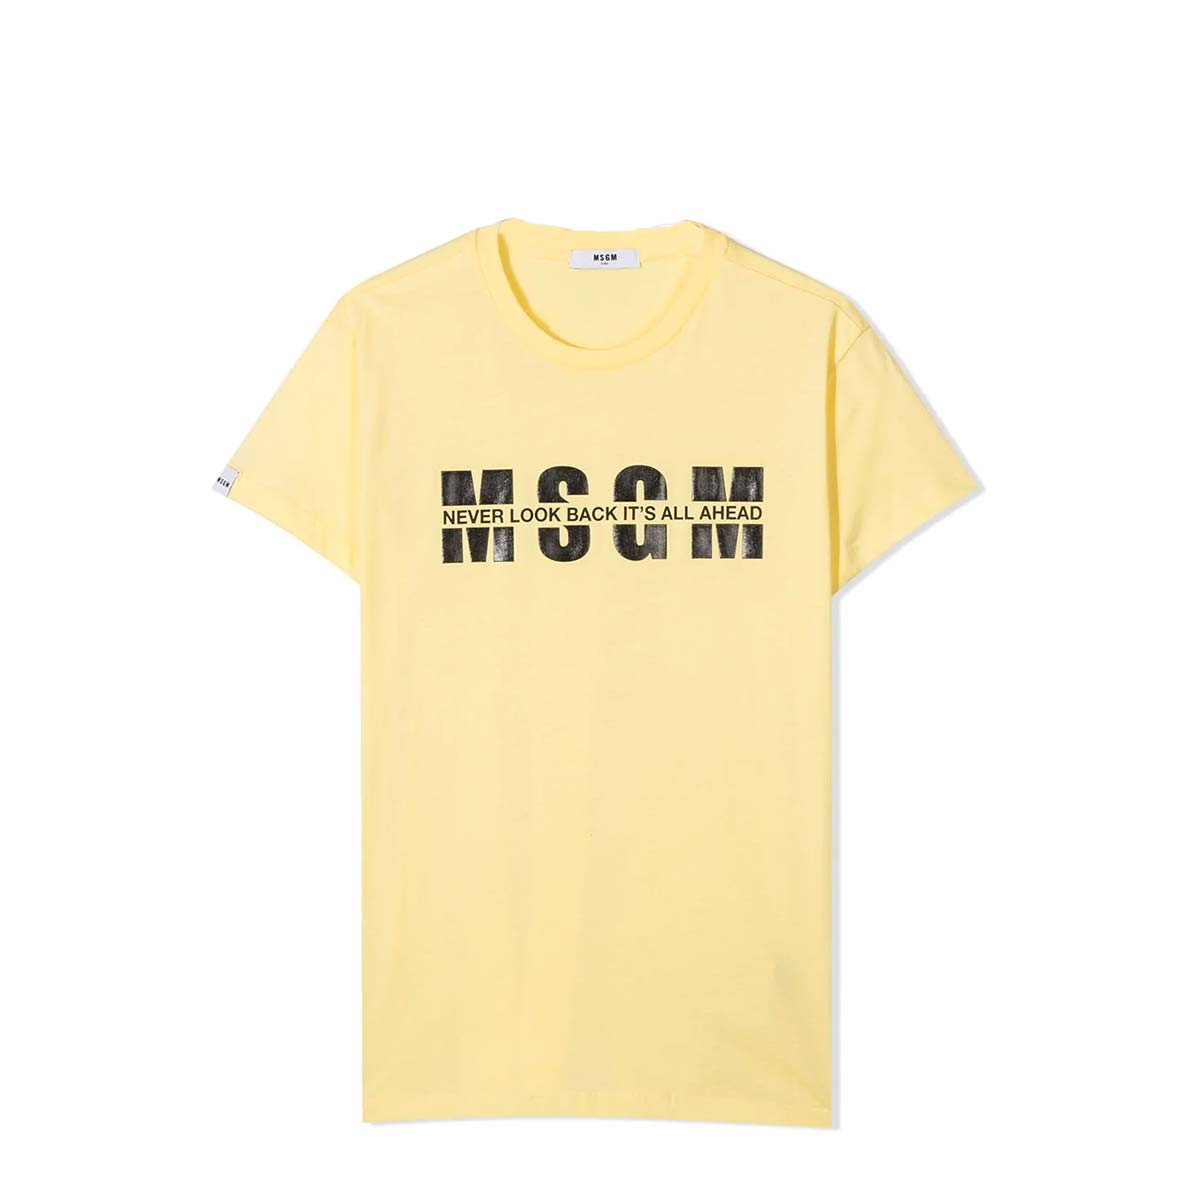 Msgm Kids' T-shirt With Print In Arancione